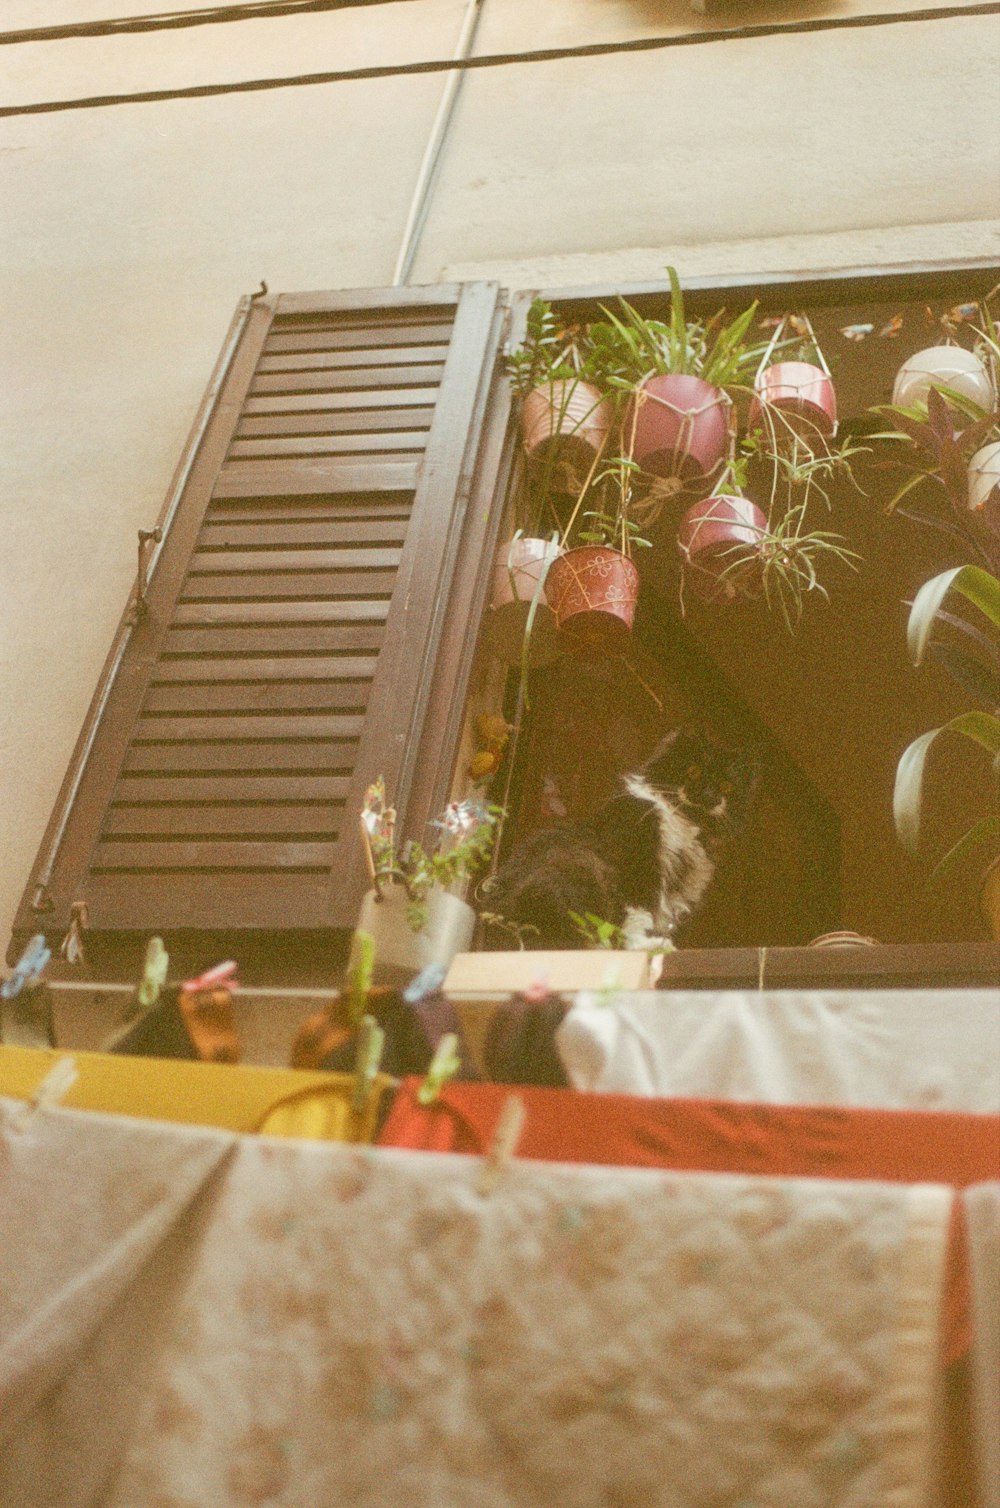 Un gato sentado en el alféizar de una ventana junto a un ramo de plantas